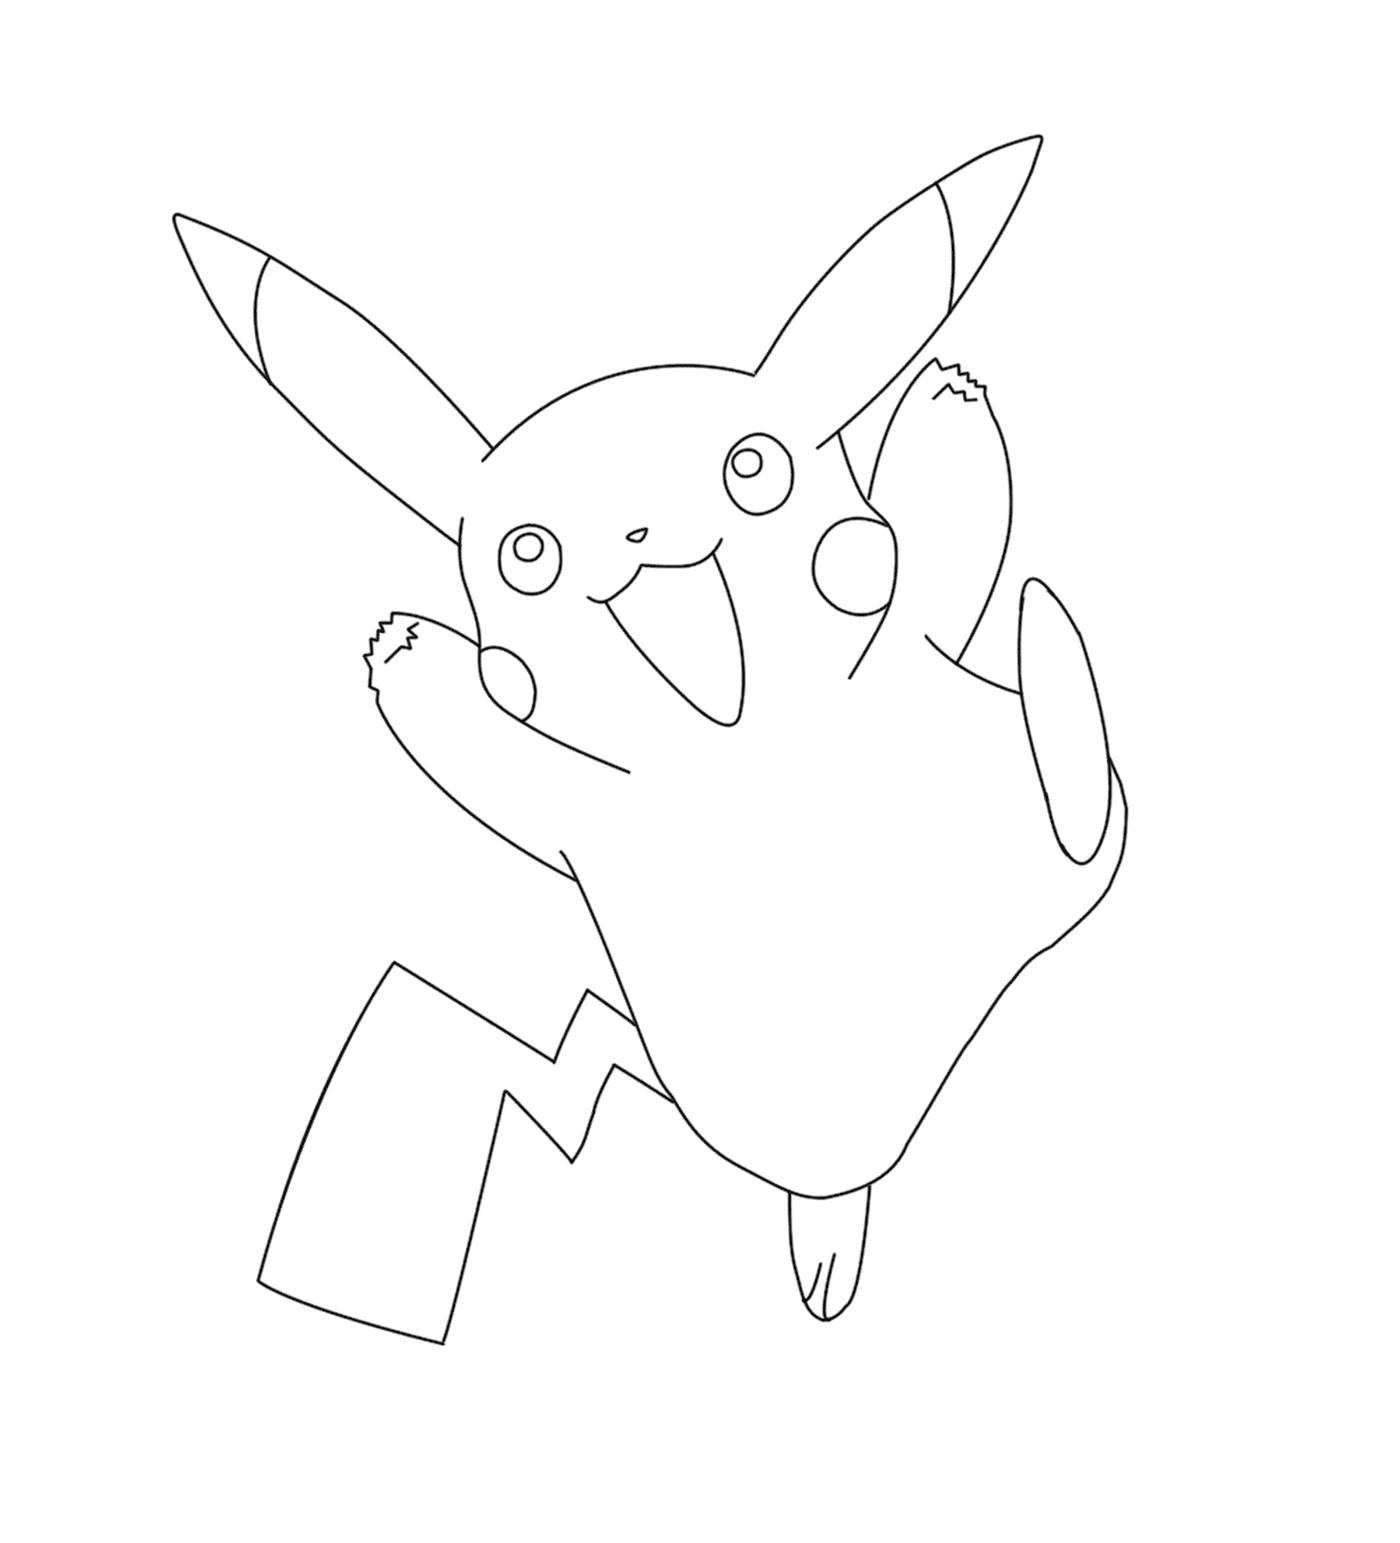  Pokémon Pikachu no jogo Pokémon Go 